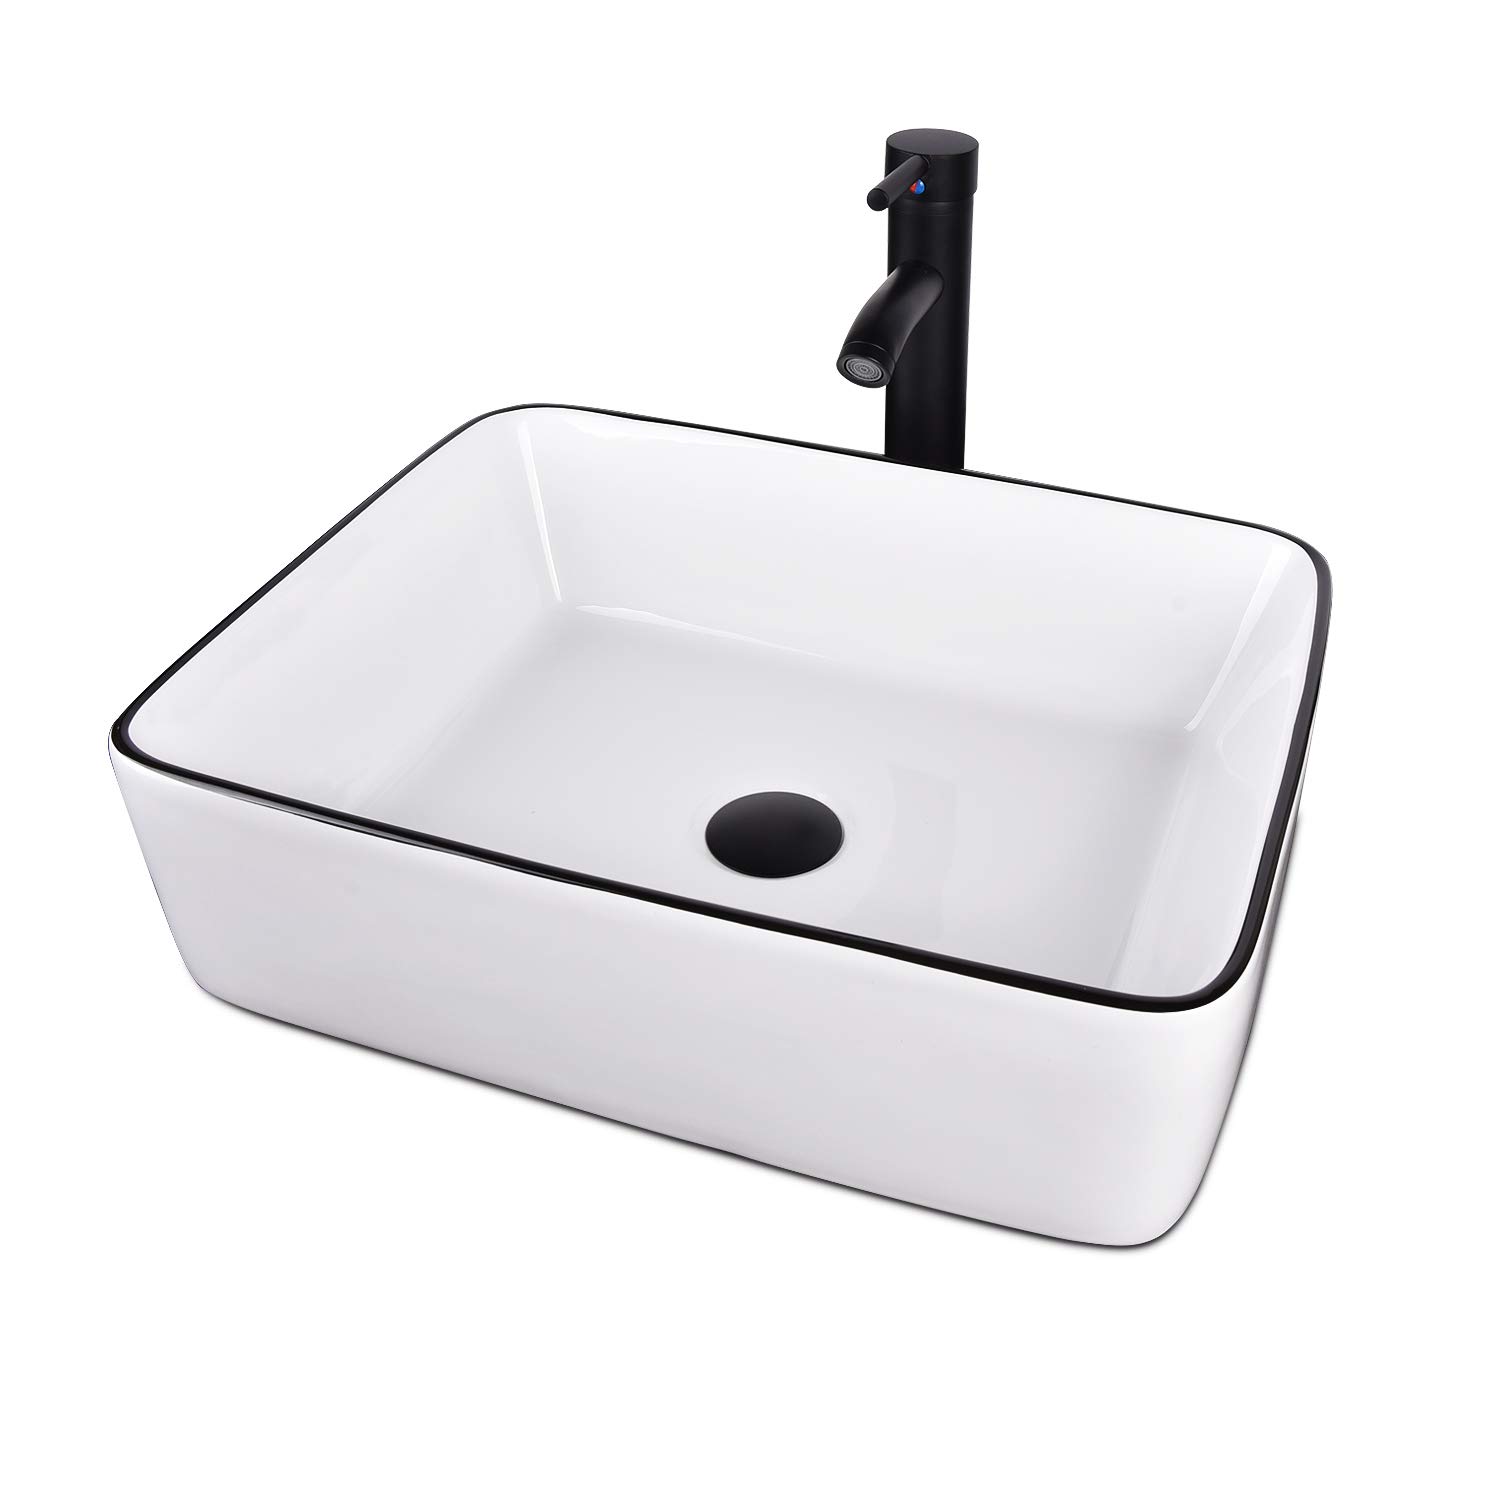 Puluomis White Ceramic Bathroom Sink